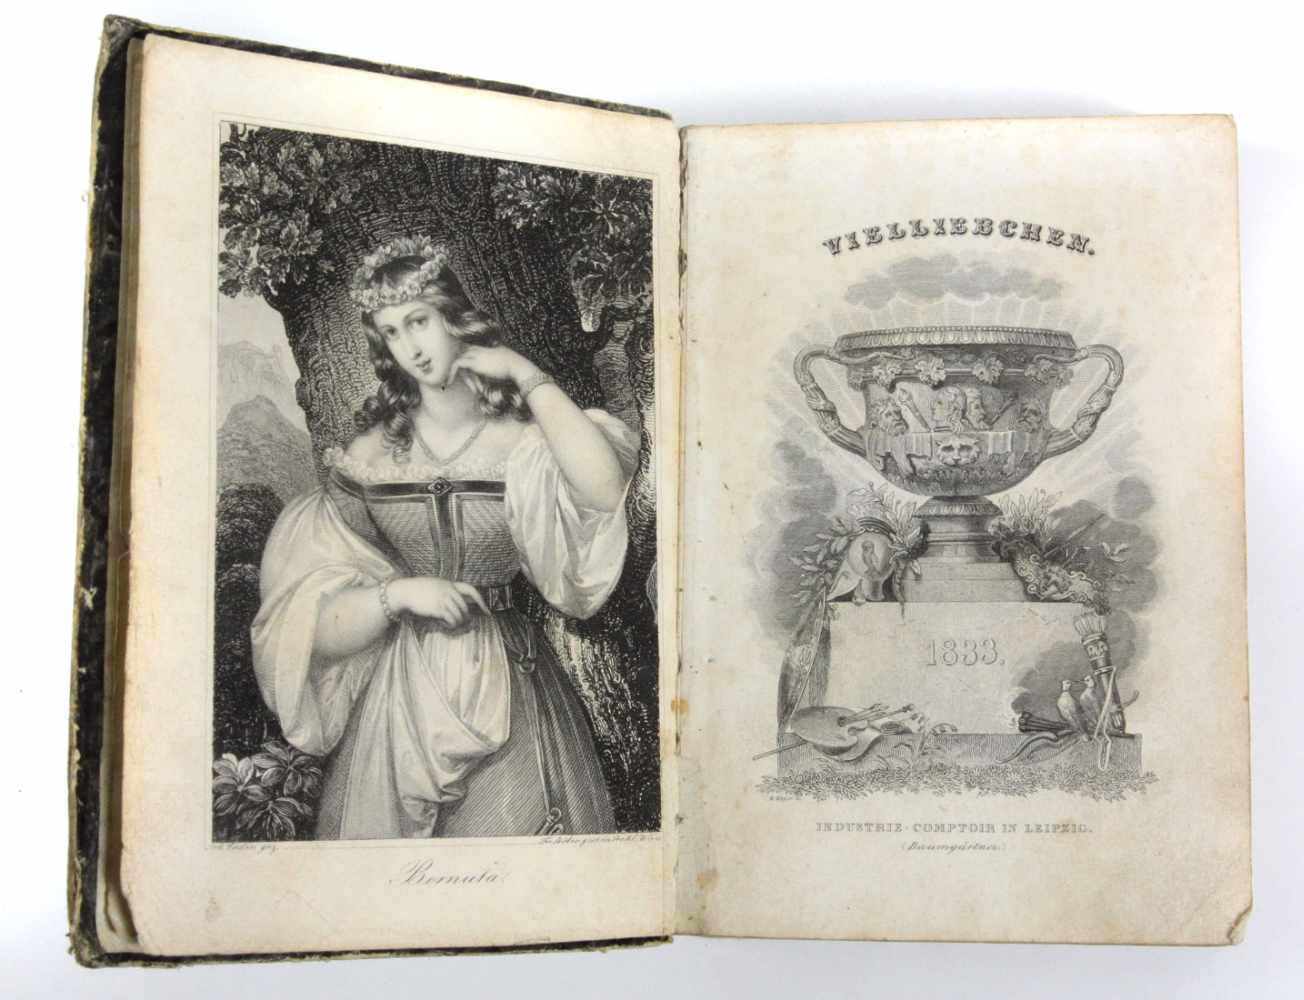 Vielliebchen Almanach 1833 Vielliebchen. Historisch-Romantisches Taschenbuch für 1833. Hsg.v. A.v.